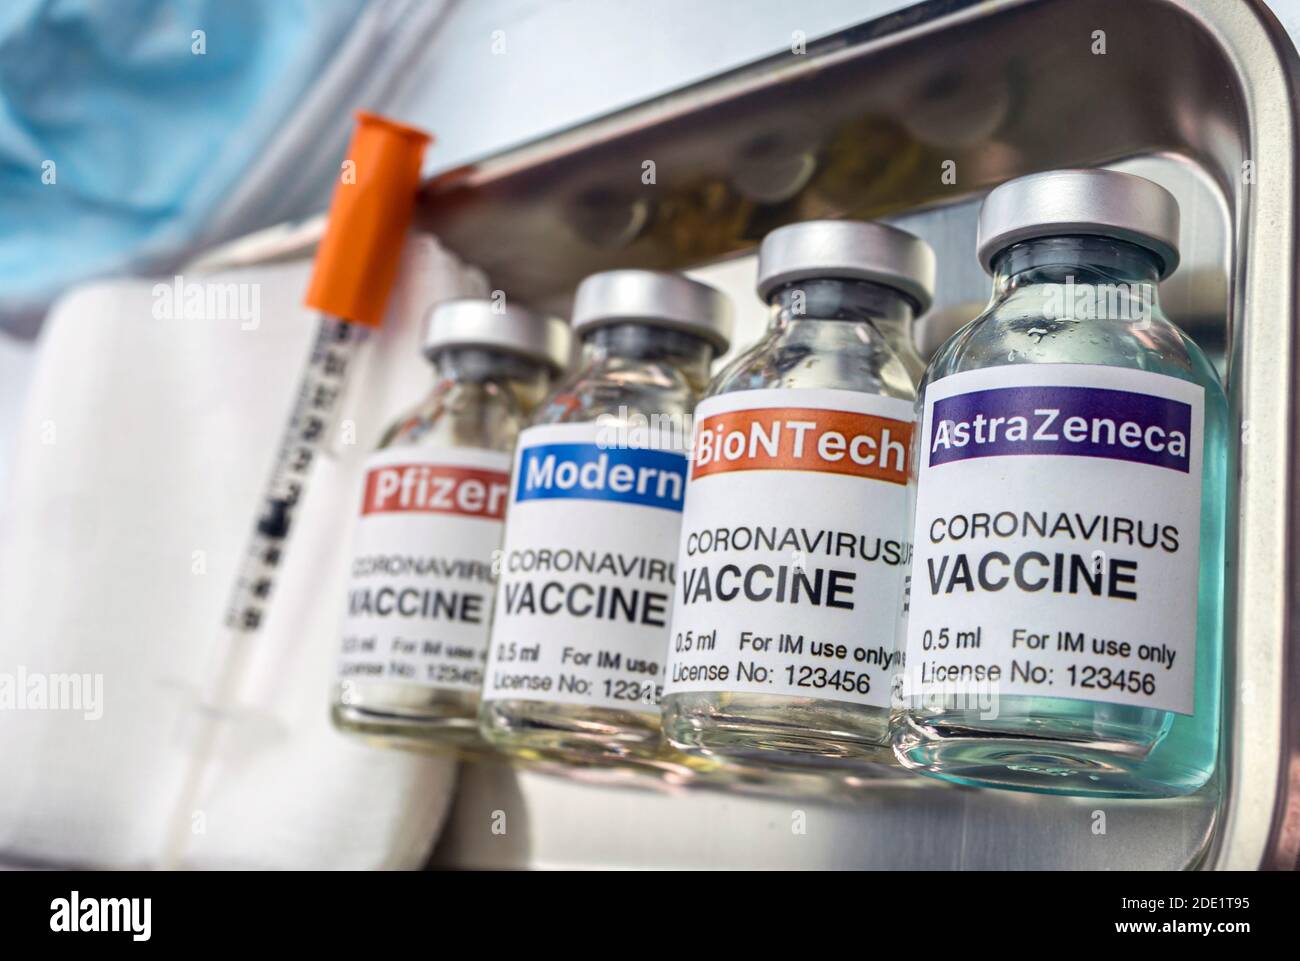 Mehrere Impfstoffe aus verschiedenen Laboratorien mit hoher Wirksamkeit gegen Covid-19, konzeptionelles Bild Stockfoto